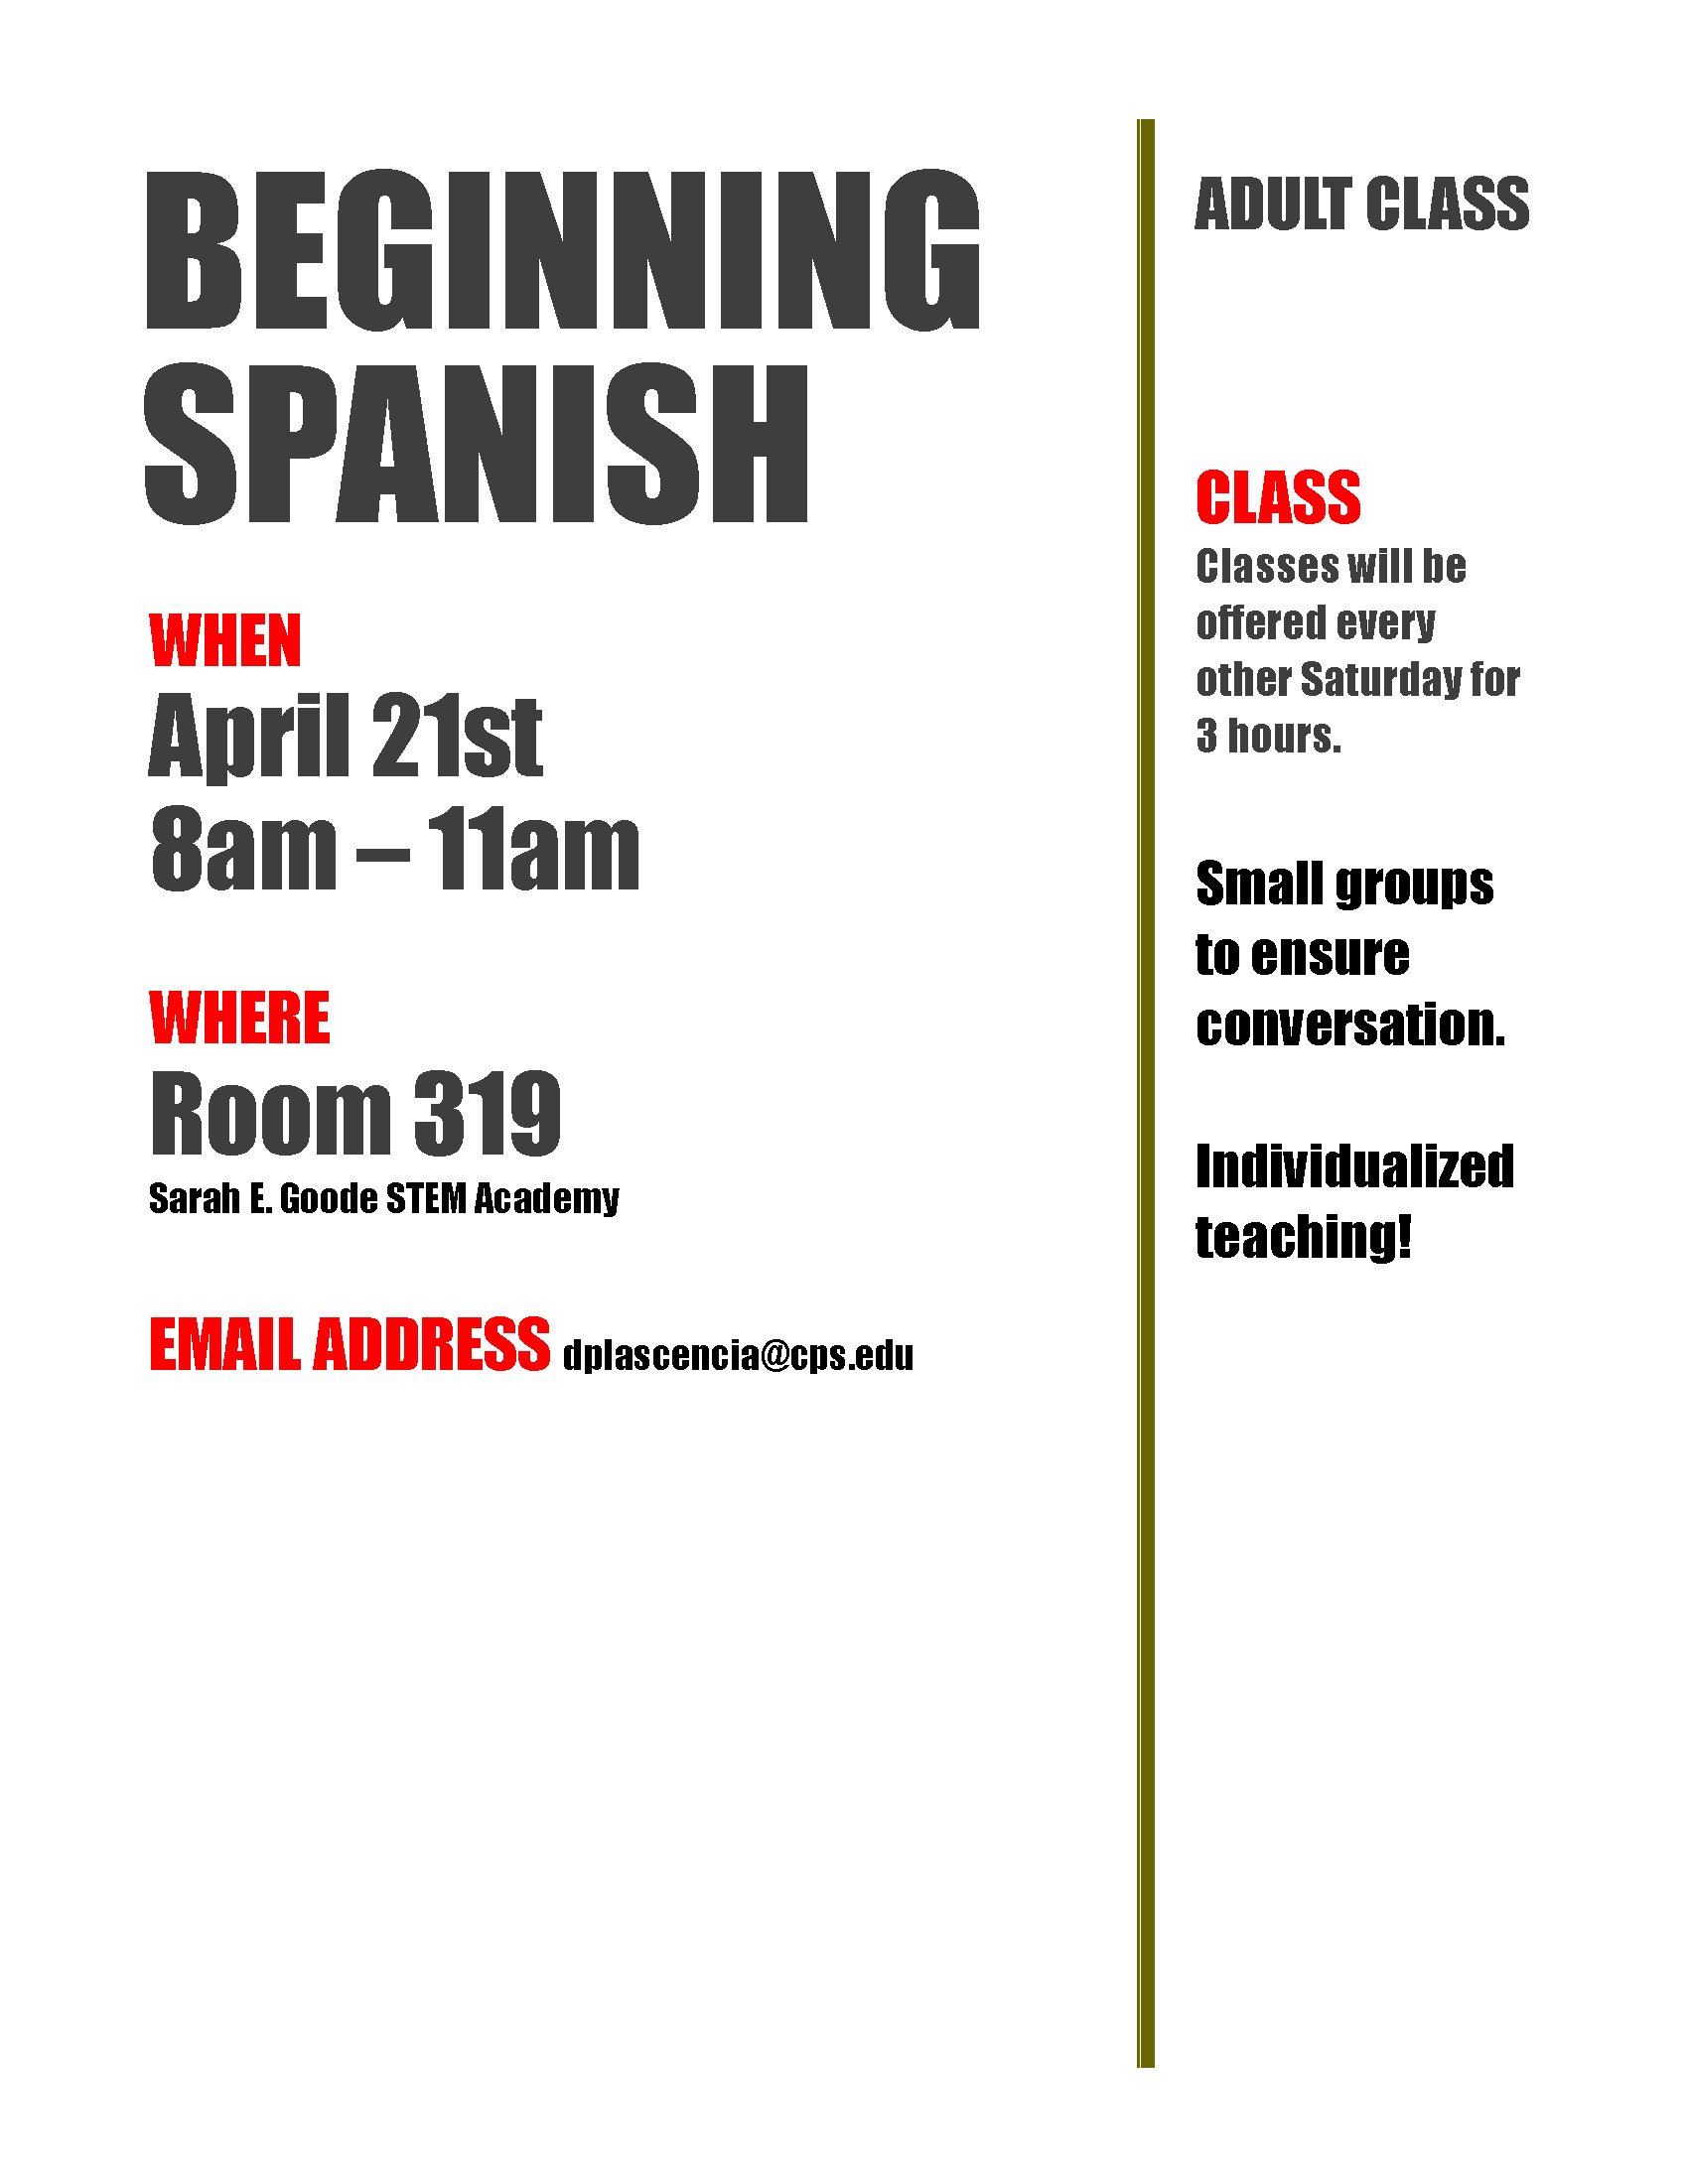 Beginning Spanish Adult Classes